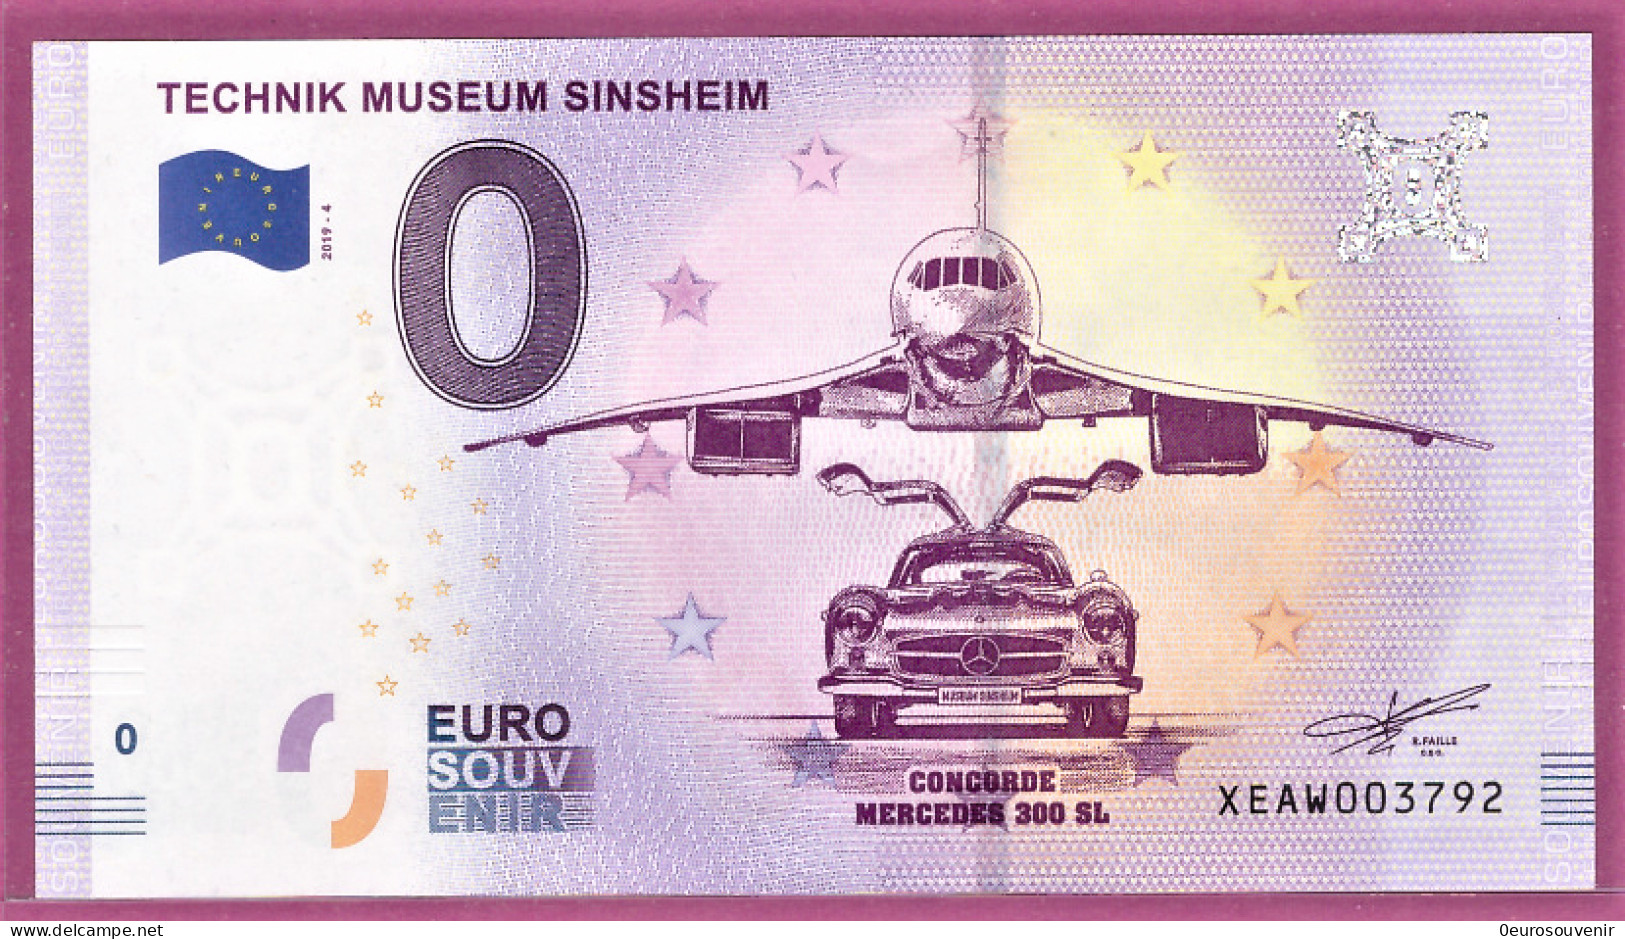 0-Euro XEAW 04 2019 TECHNIK MUSEUM SINSHEIM - CONCORDE + MERCEDES 300 SL FLÜGELTÜRER - Privatentwürfe